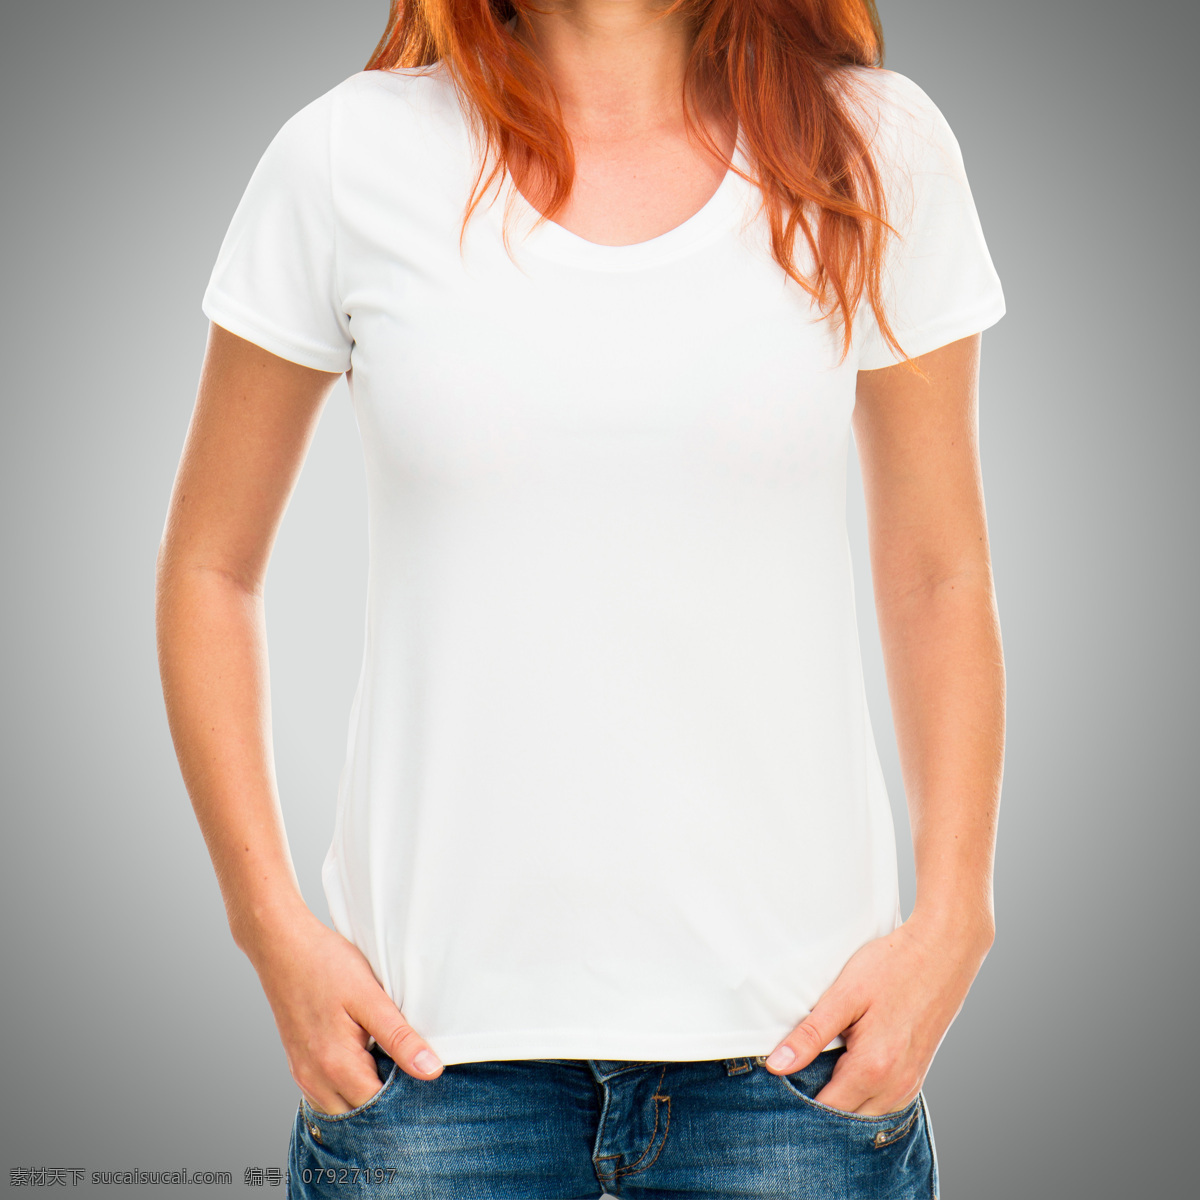 女性短袖t恤 短袖t恤衫 t恤设计 服装设计 白色t恤 珠宝服饰 男士t恤 生活百科